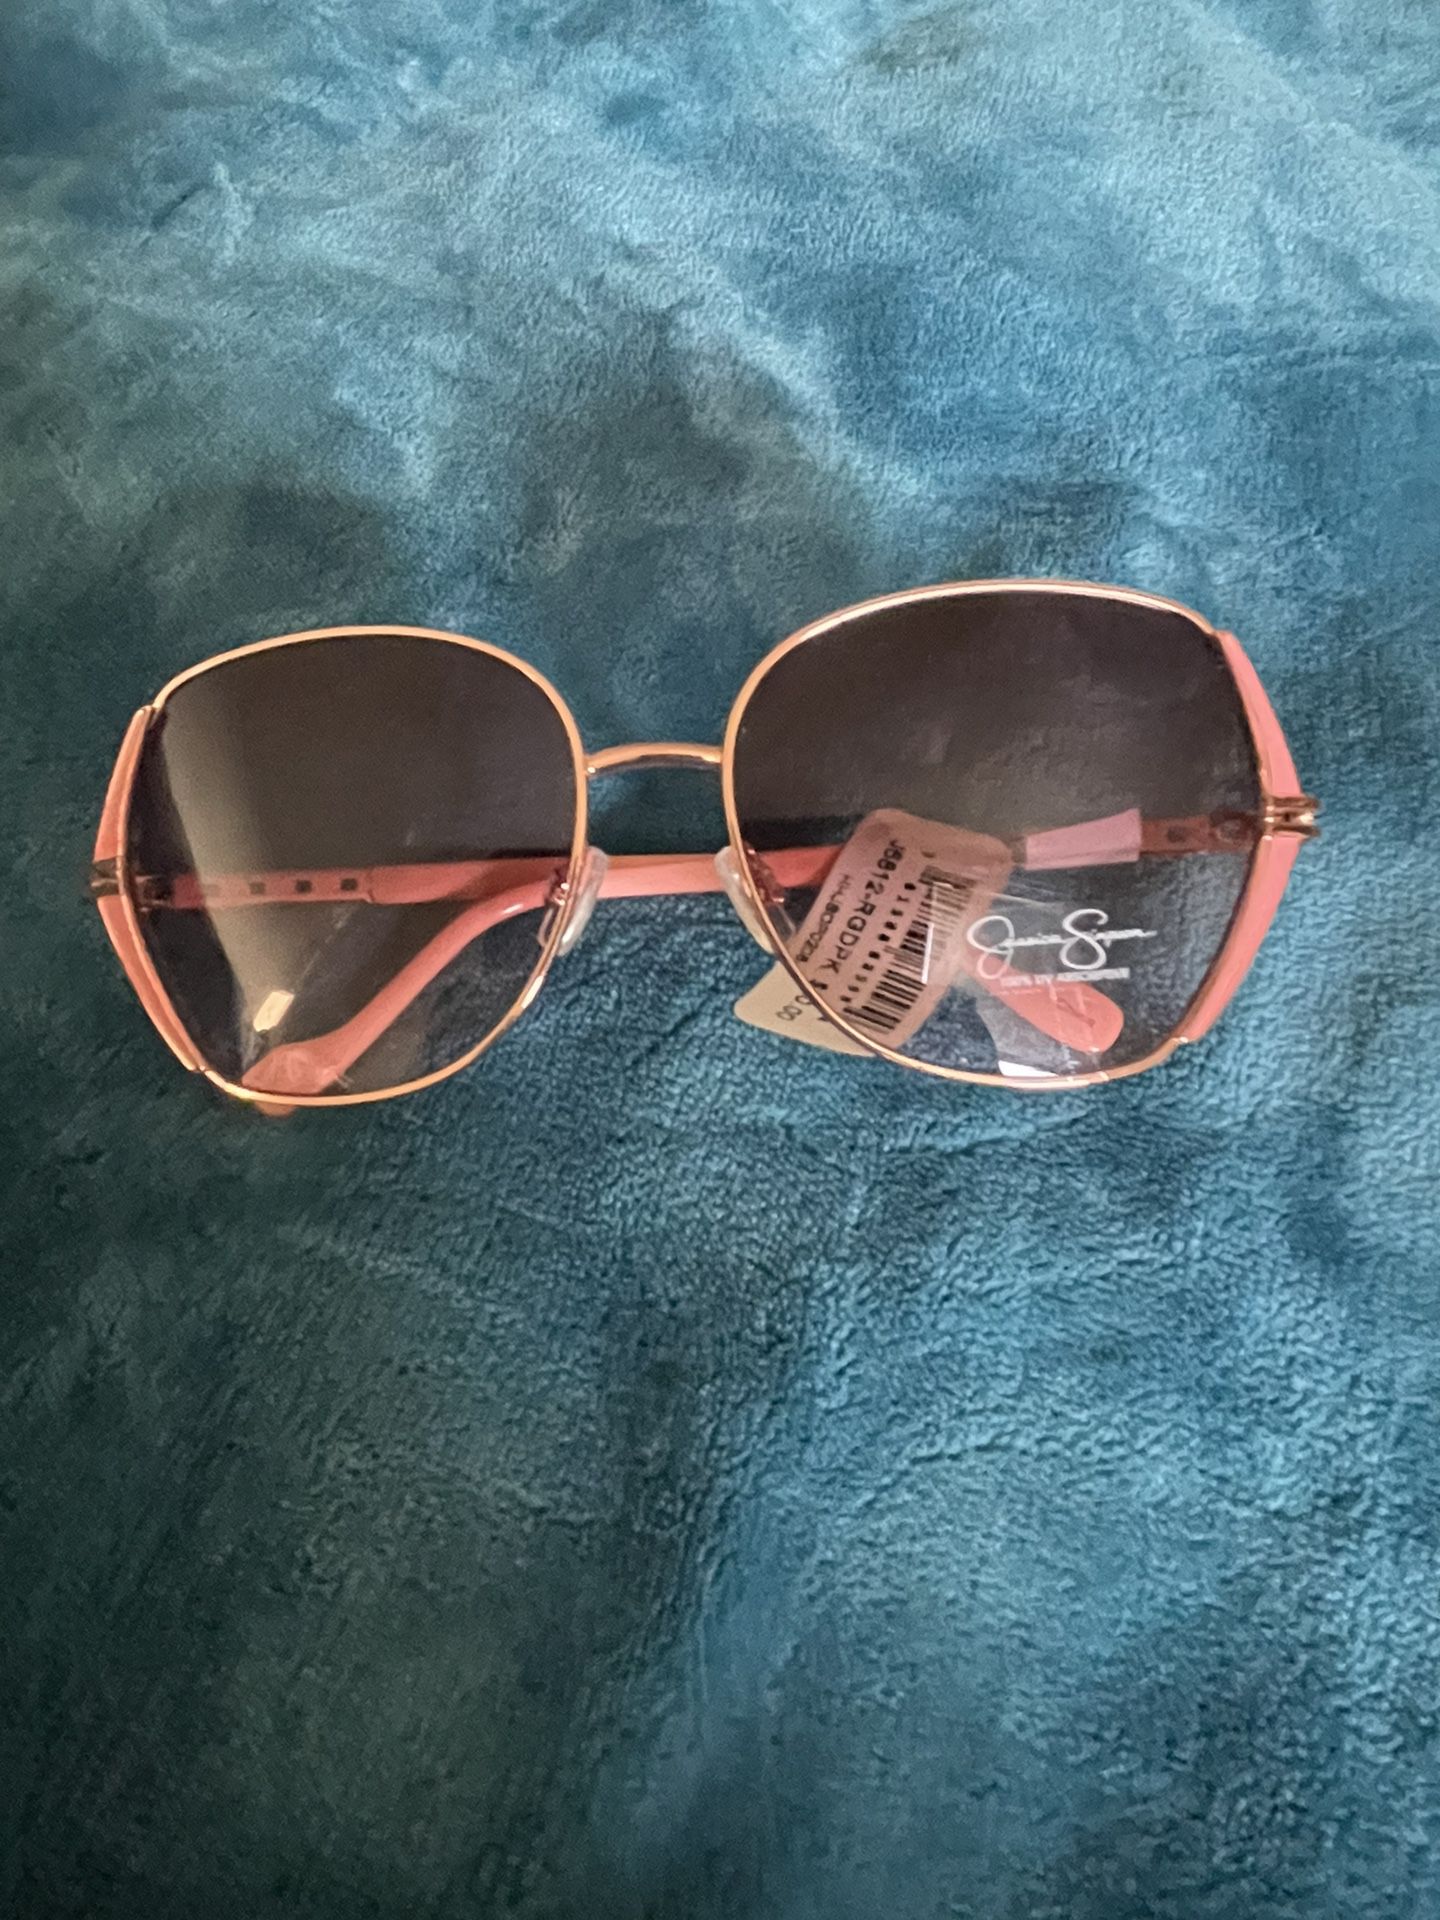 Ladies Sunglasses